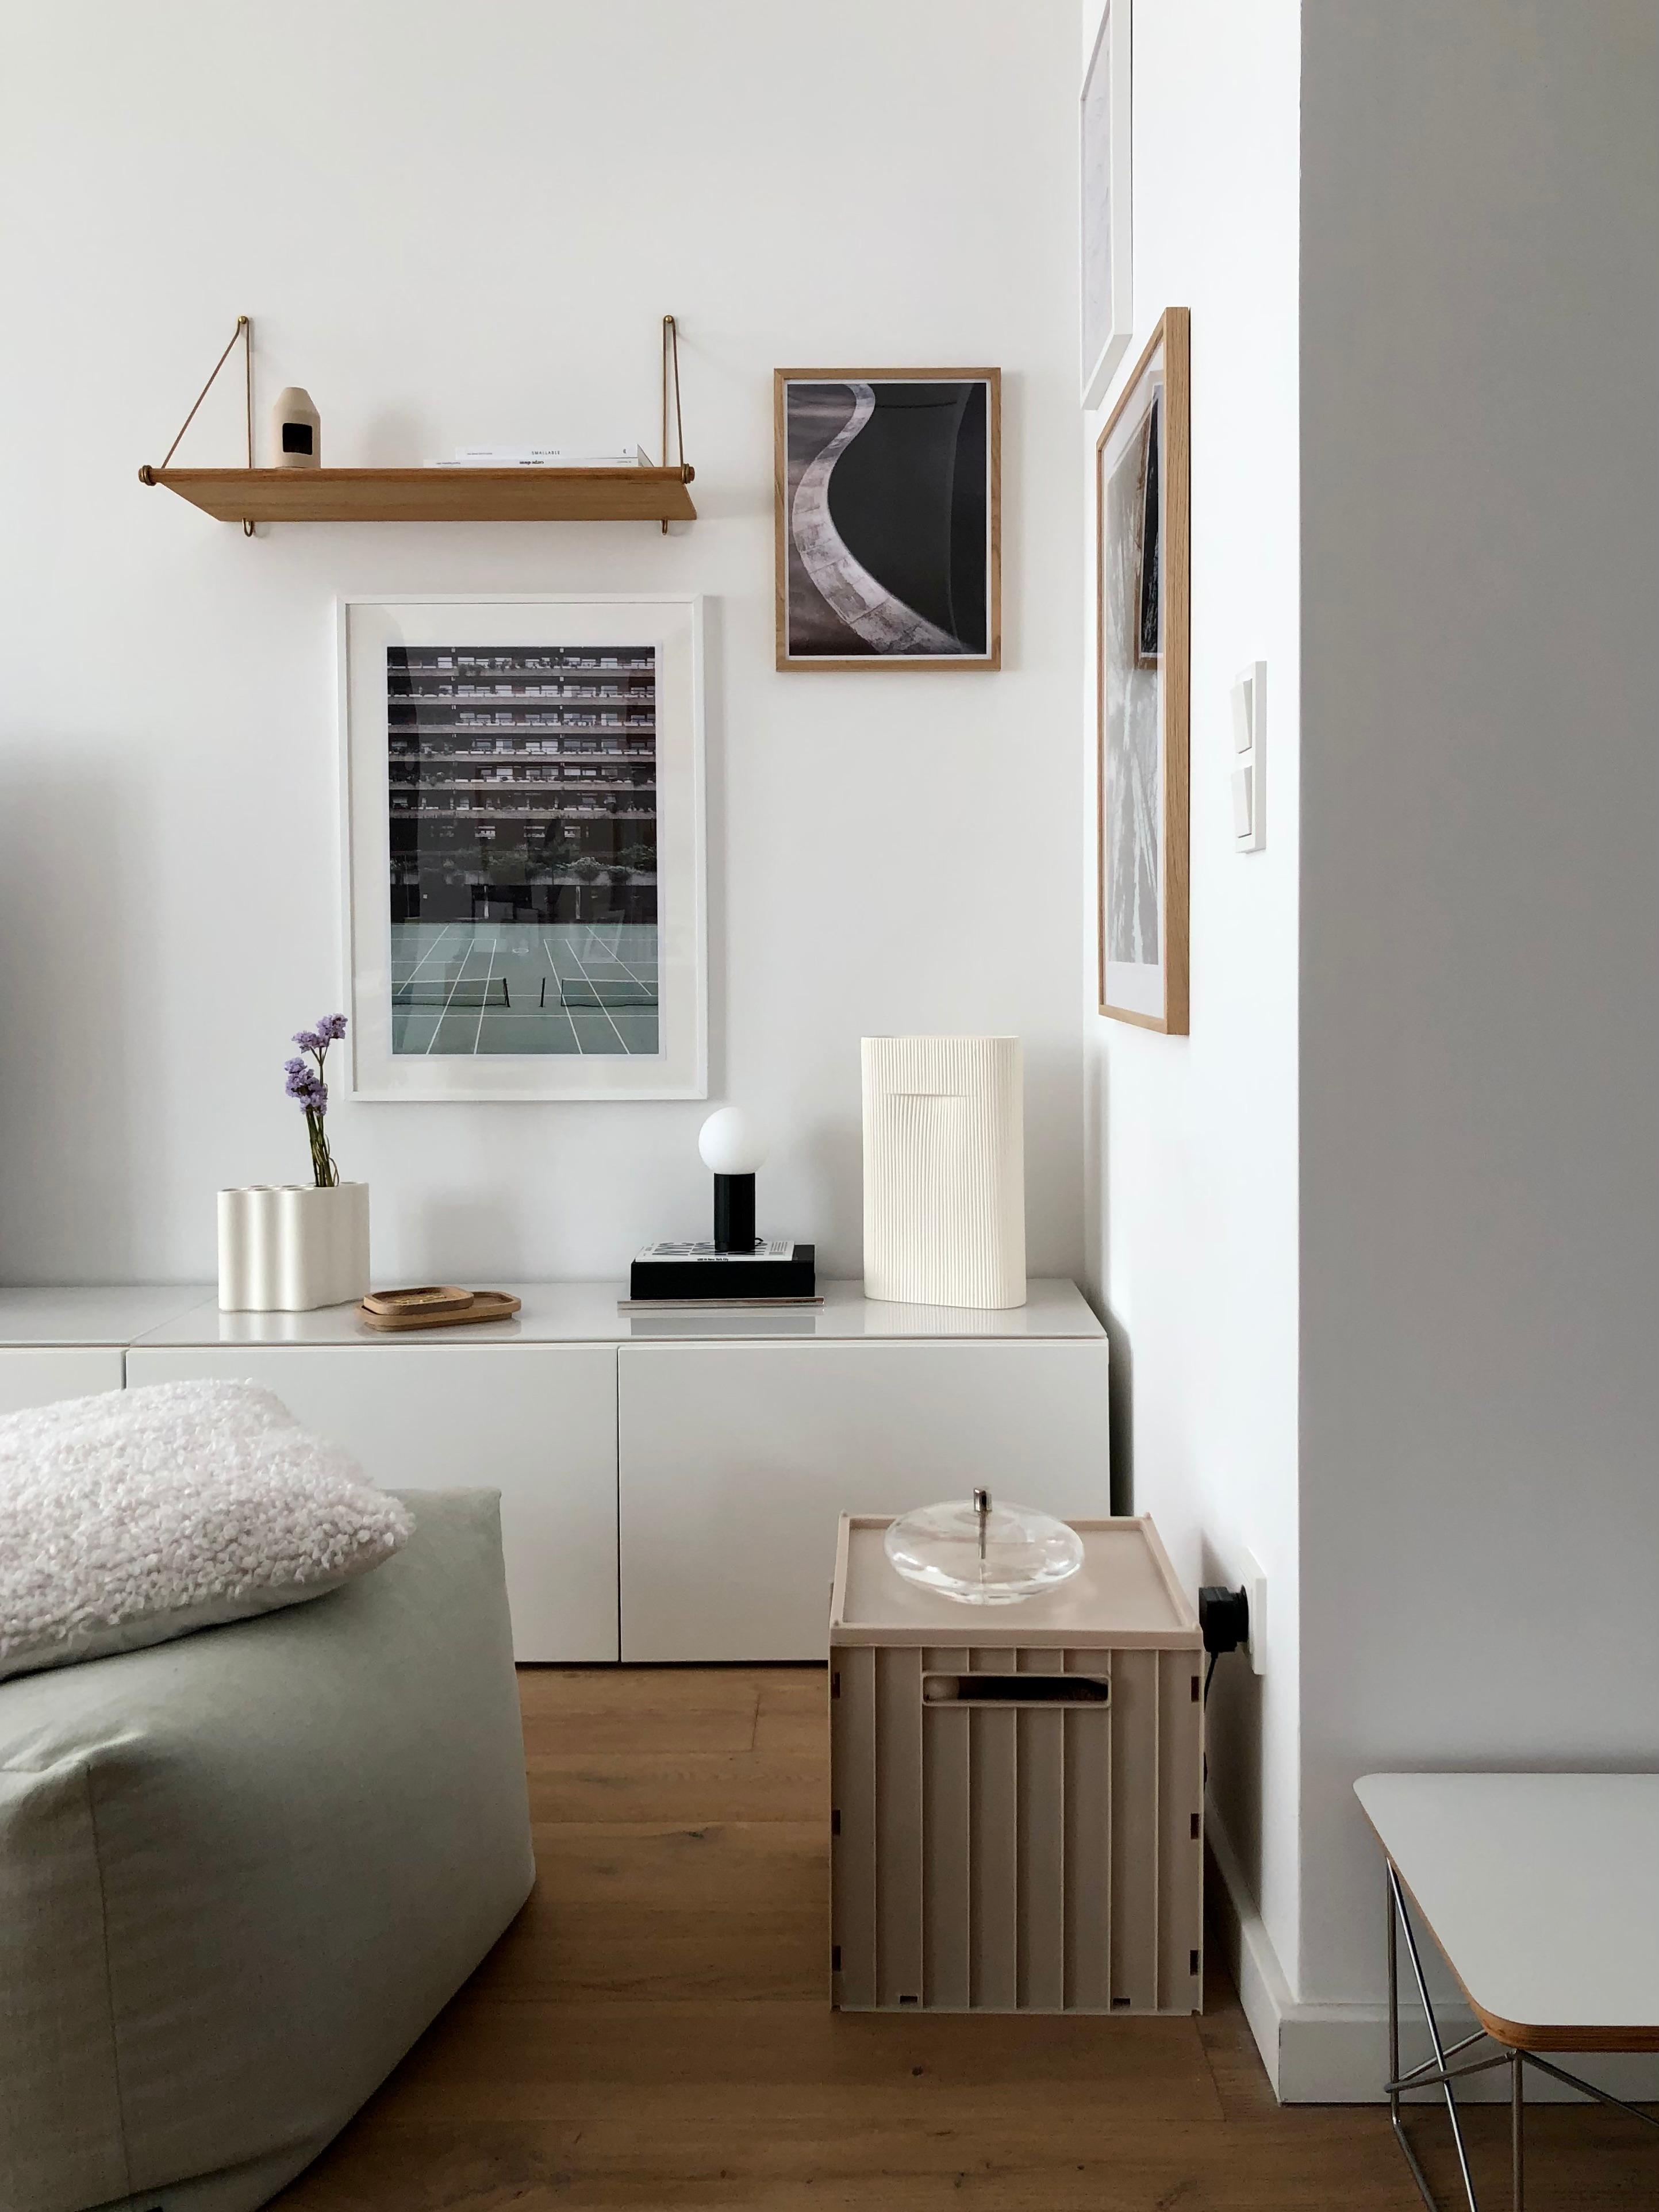 #wohnzimmer #livingroom #bilderwand #bildergalerie #wanddeko #wandgestaltung #regal #ikea #besta #skandinavisch #home #couchstyle